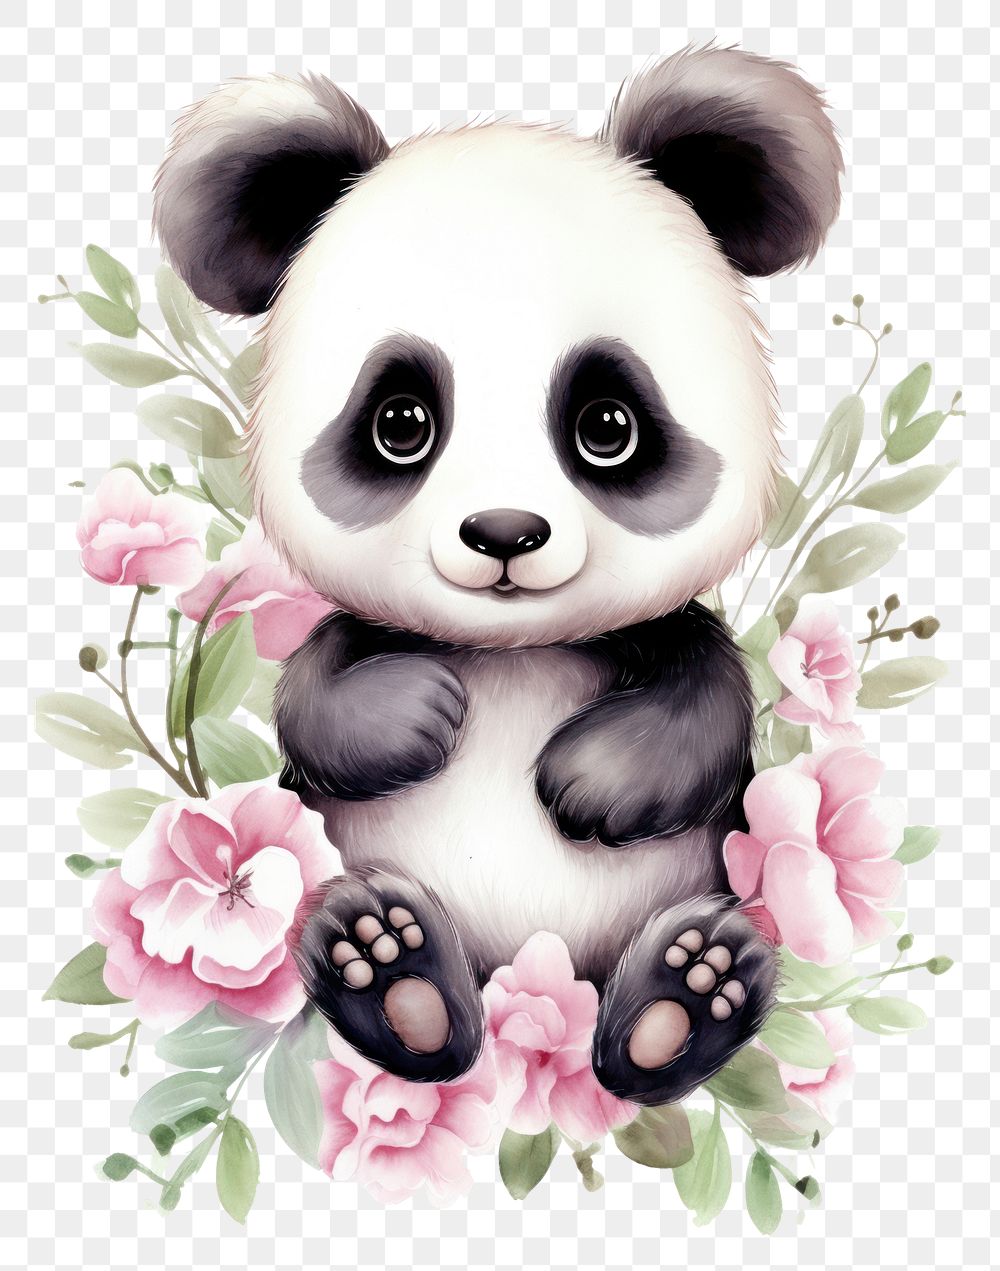 PNG Watercolor of panda mammal animal bear.